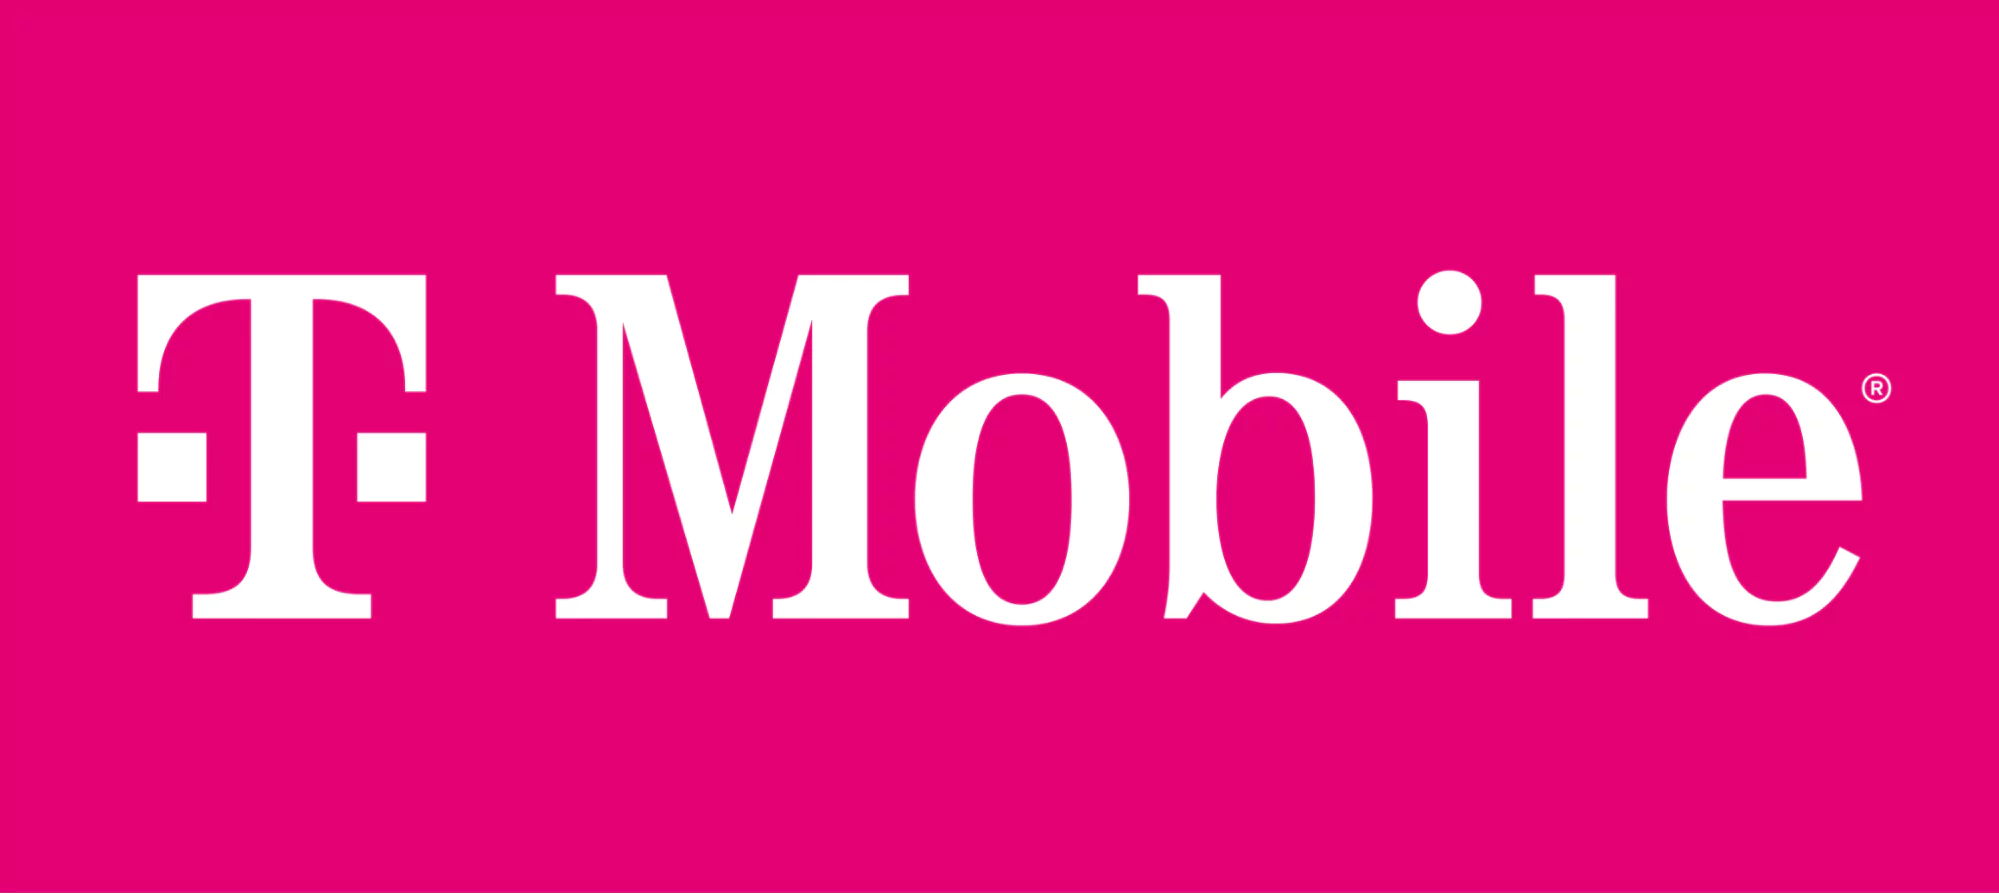 Beyaz metinli macenta T-Mobile logosu